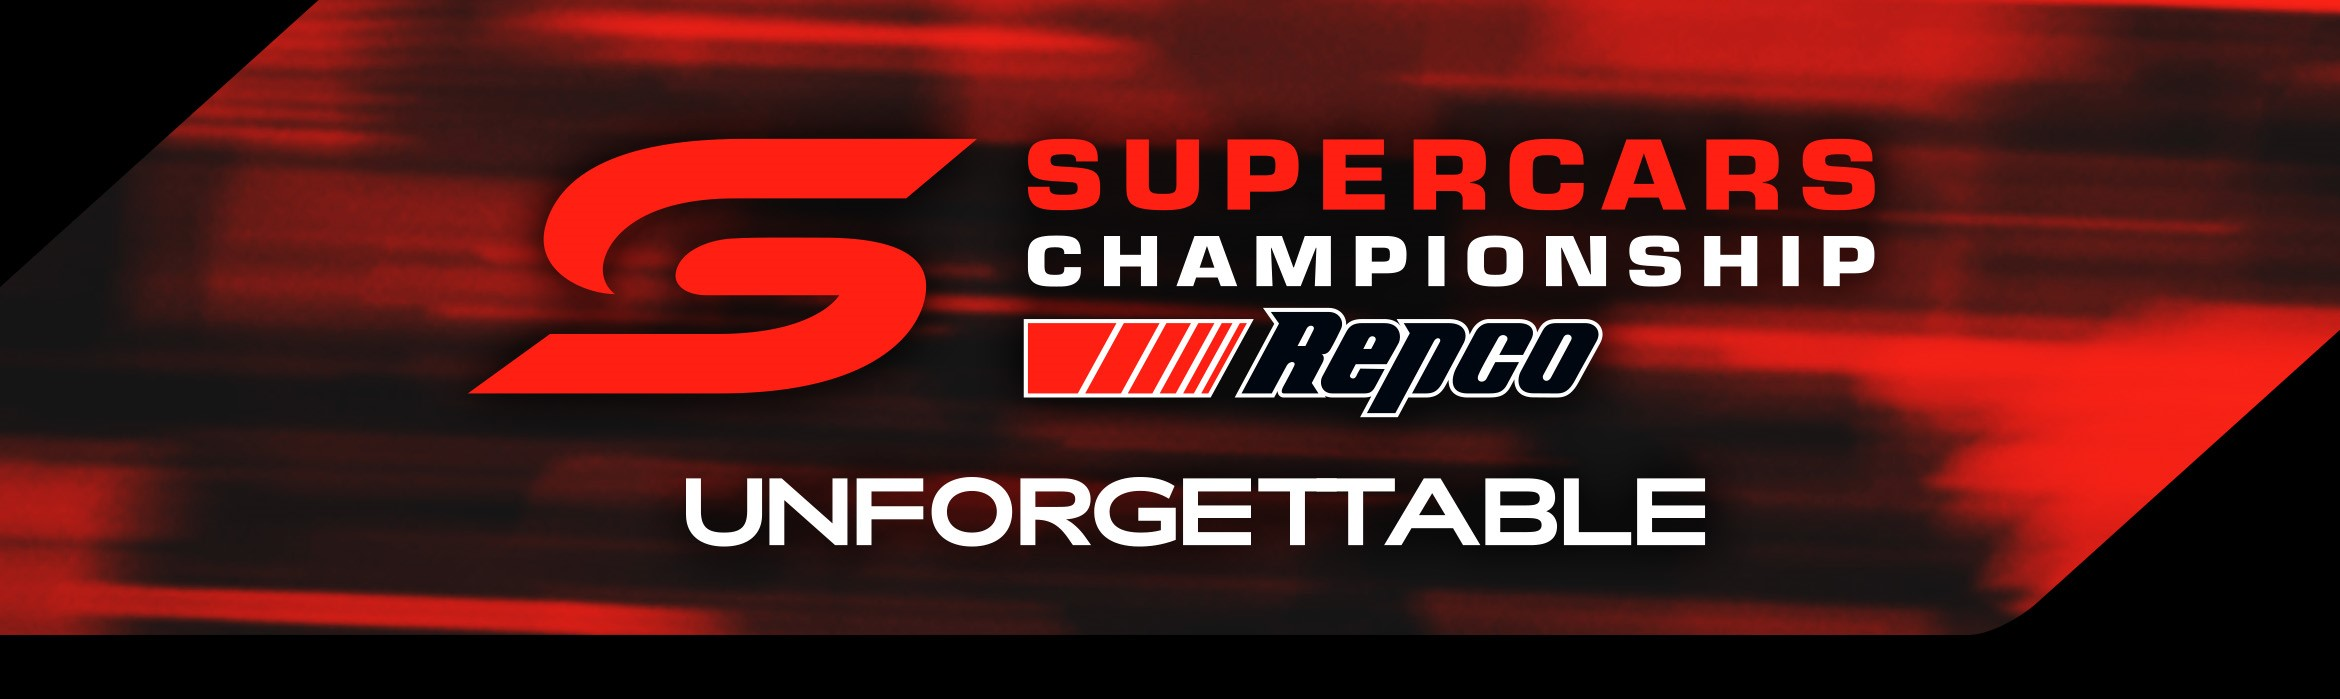 Supercars Championship - Repco